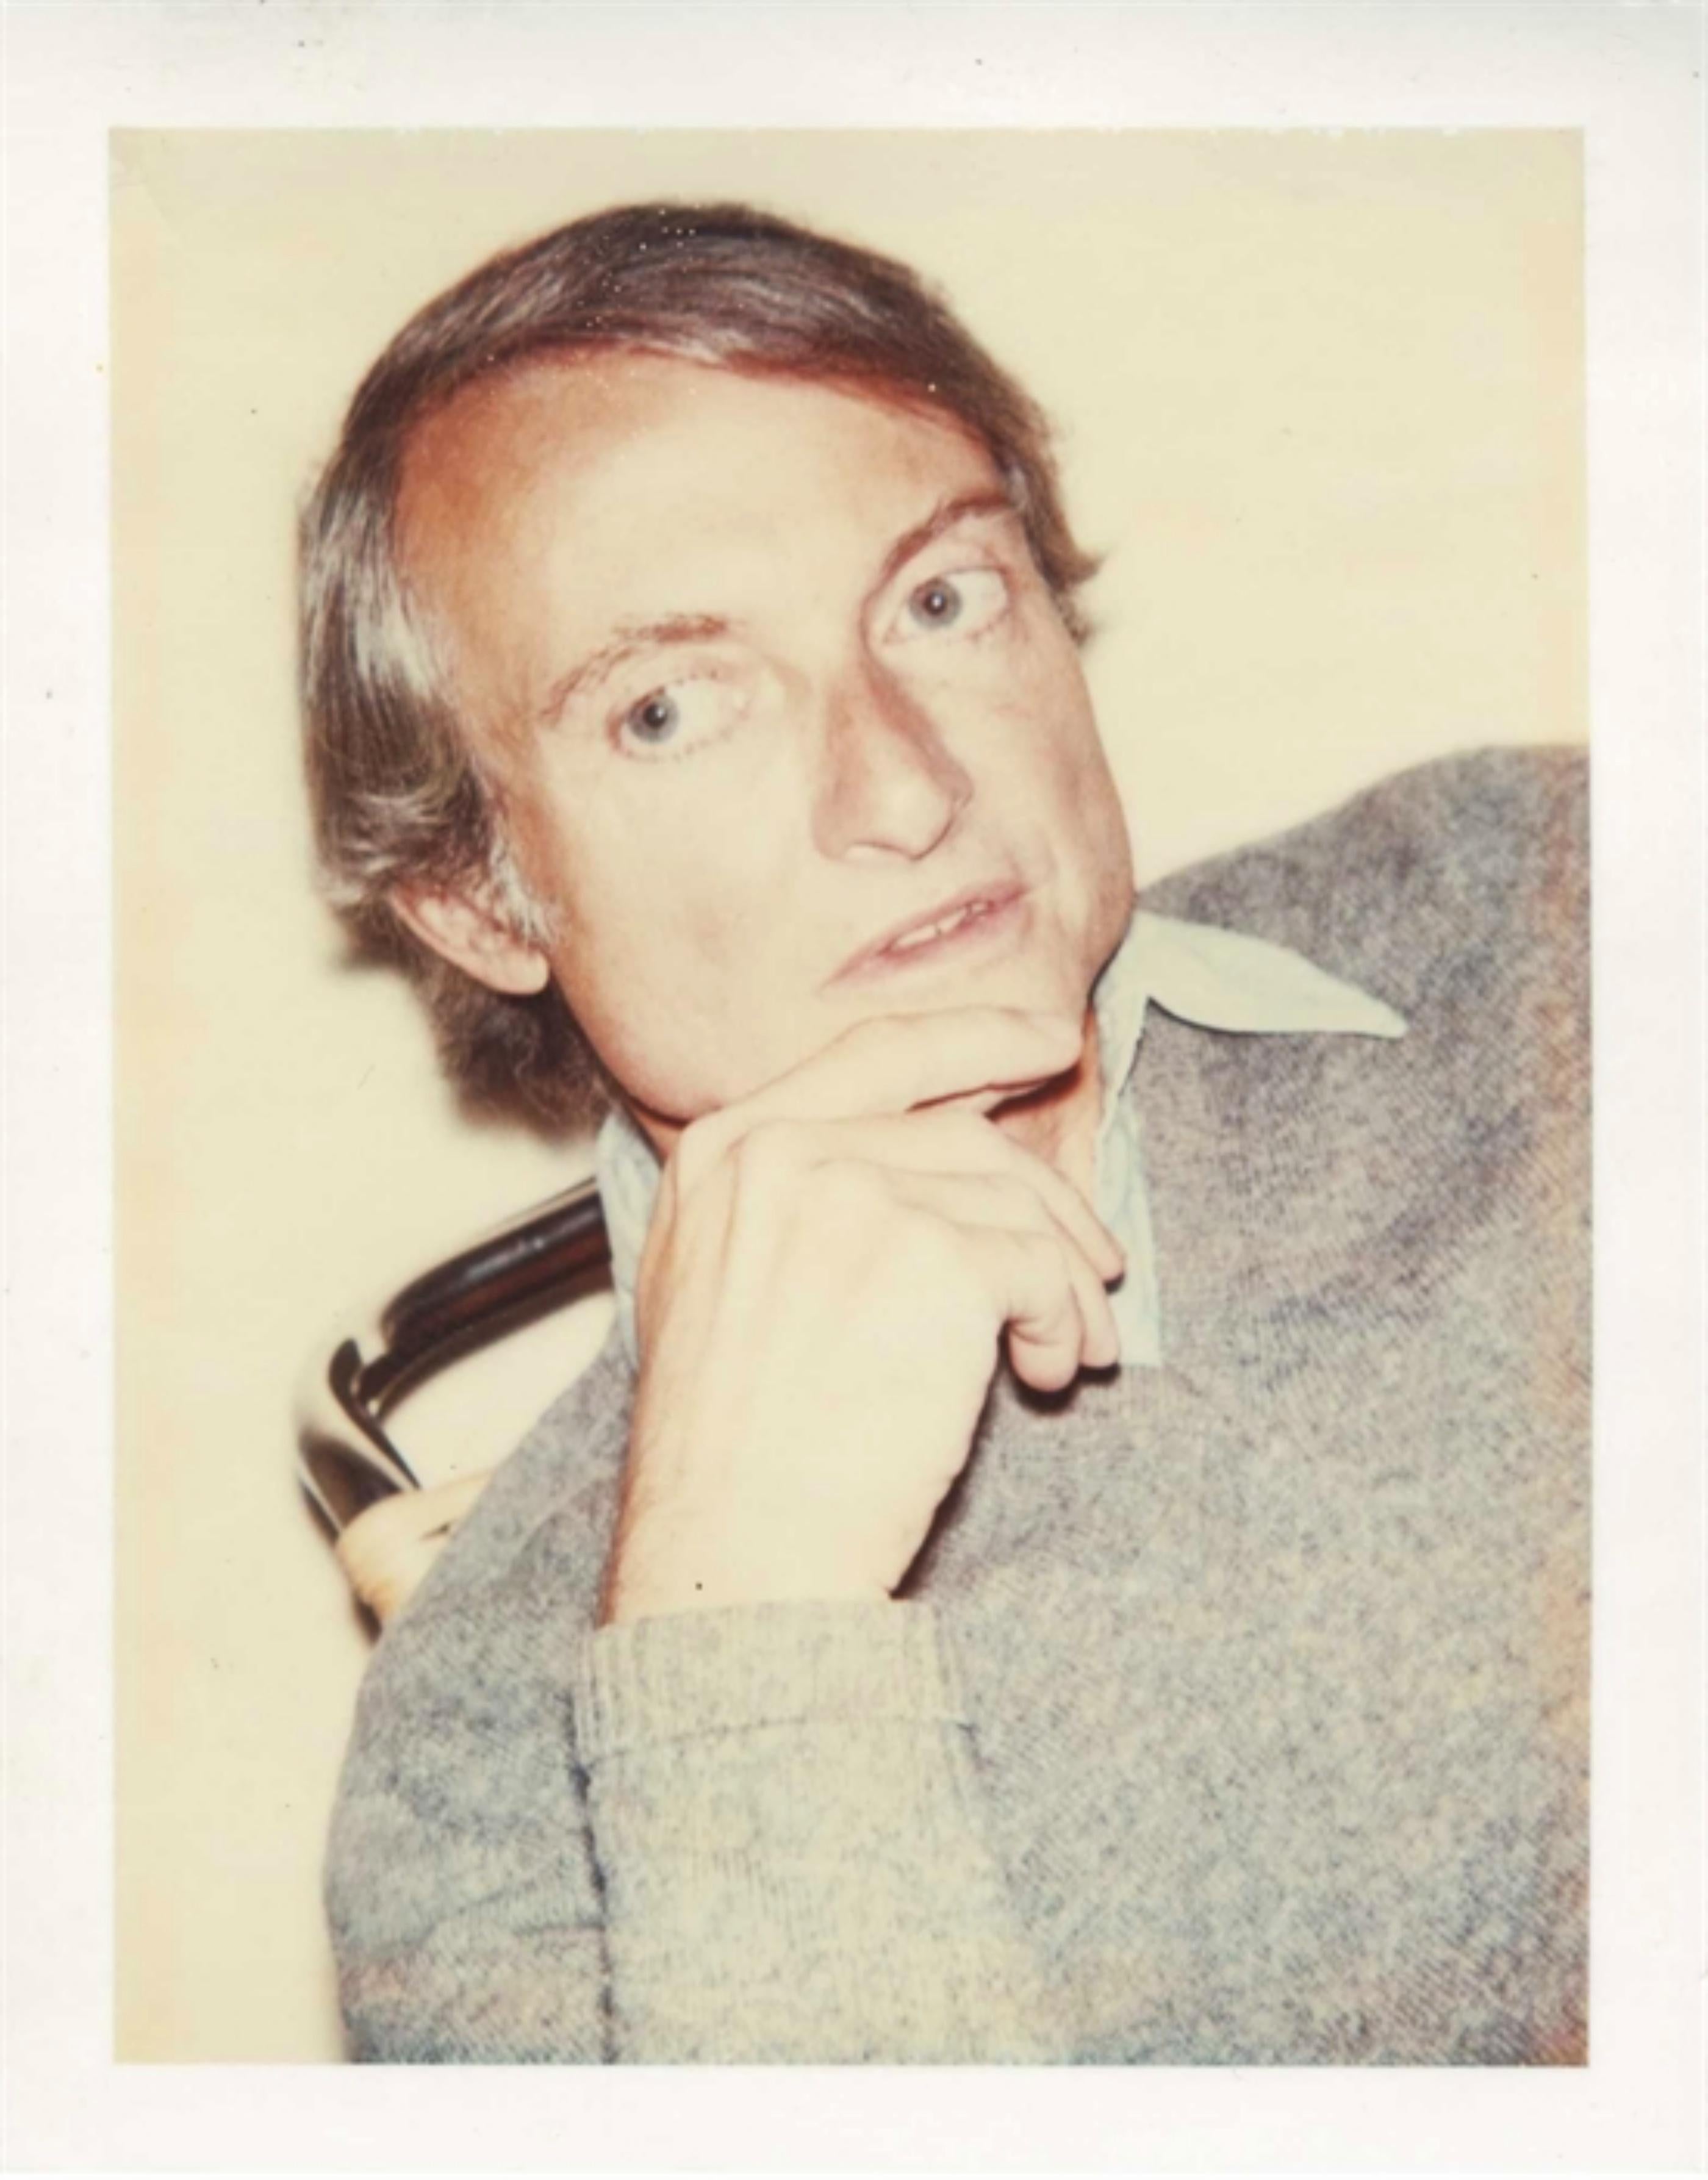 Andy Warhol
Portrait de Roy Lichtenstein, 1975
Impression polaroïd à diffusion de colorants
Authentifiée par la Fondation Andy Warhol pour les arts visuels, porte le cachet de la Fondation au verso.
Cadre inclus : Encadré dans un cadre en bois blanc